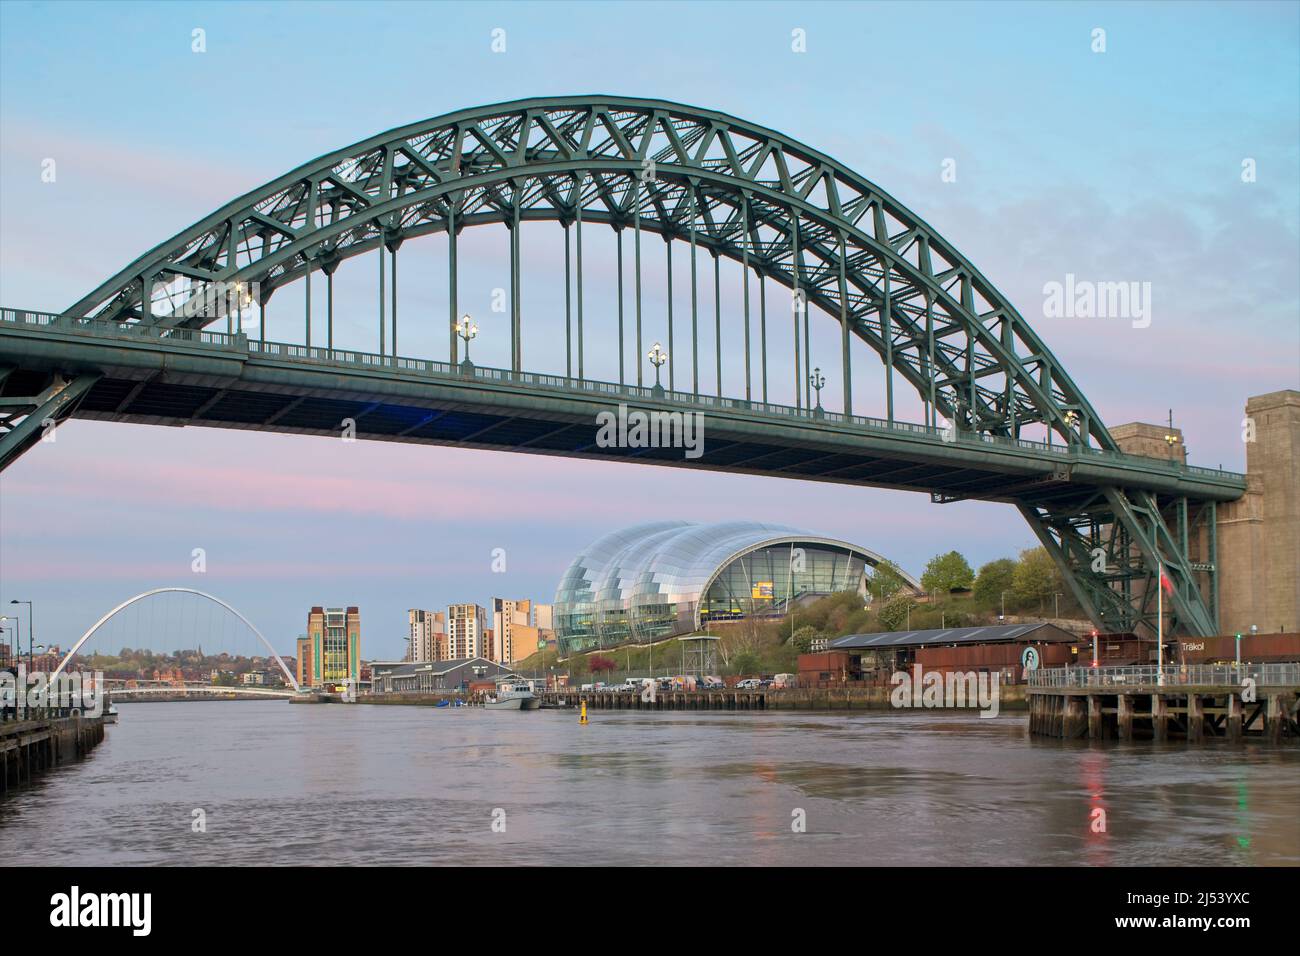 Le Tyne Bridge est un passage à travers le pont de la rivière Tyne dans le nord-est de l'Angleterre, reliant Newcastle upon Tyne et Gateshead. Banque D'Images